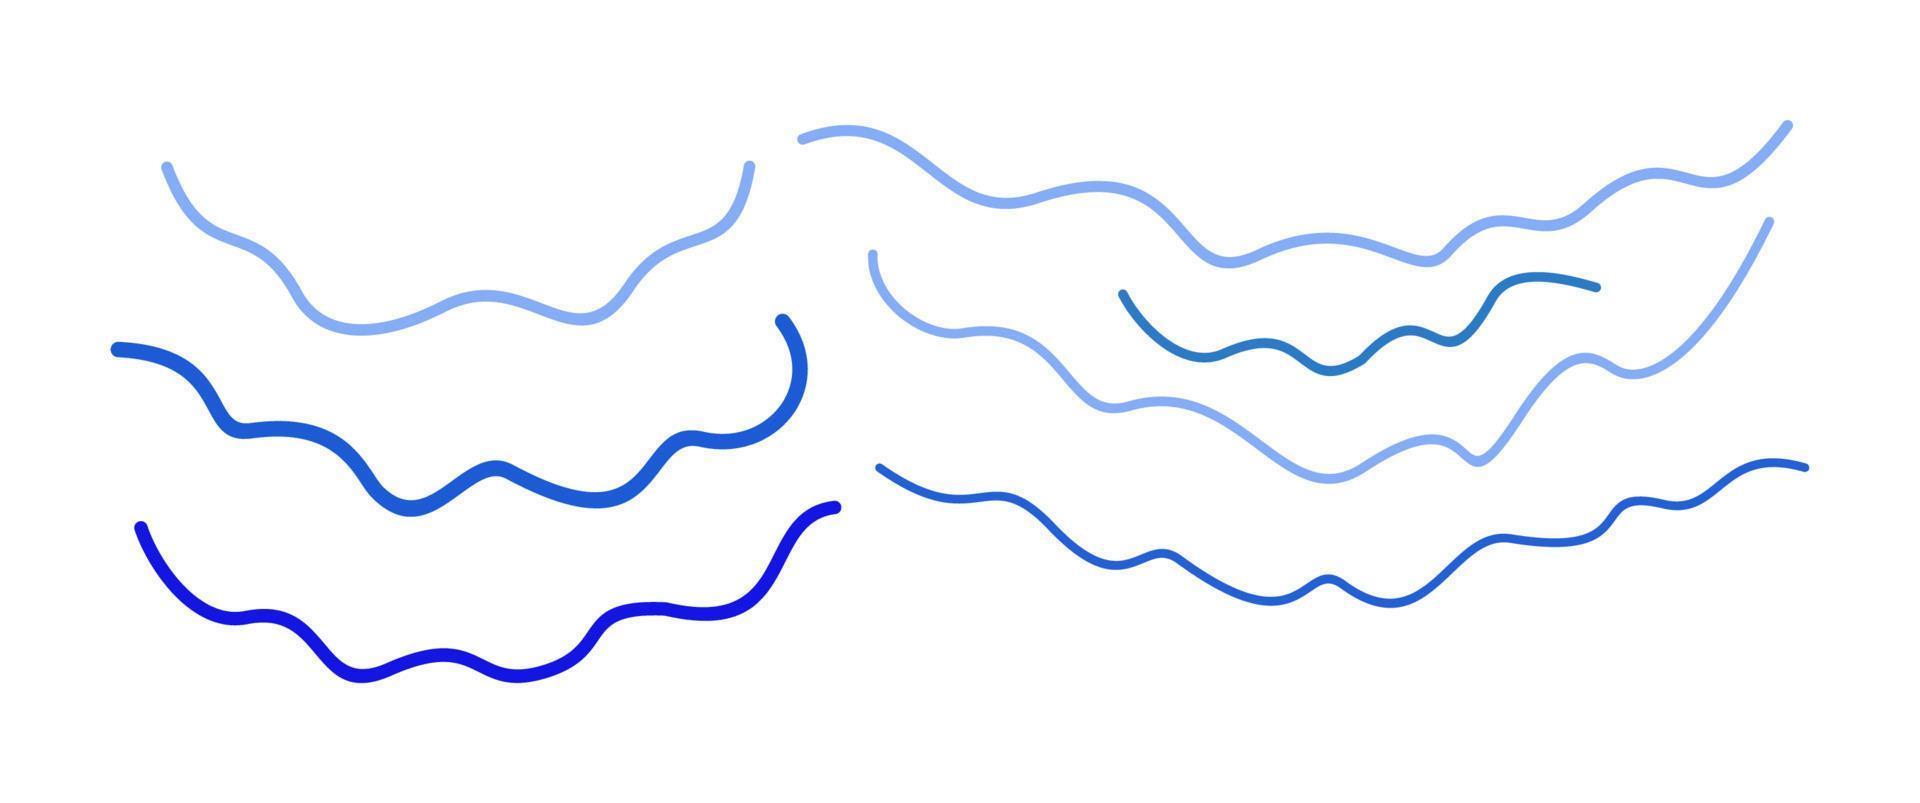 Vektorsatz blaue Wellen. geschwungene Linien in verschiedenen Formen. vektor